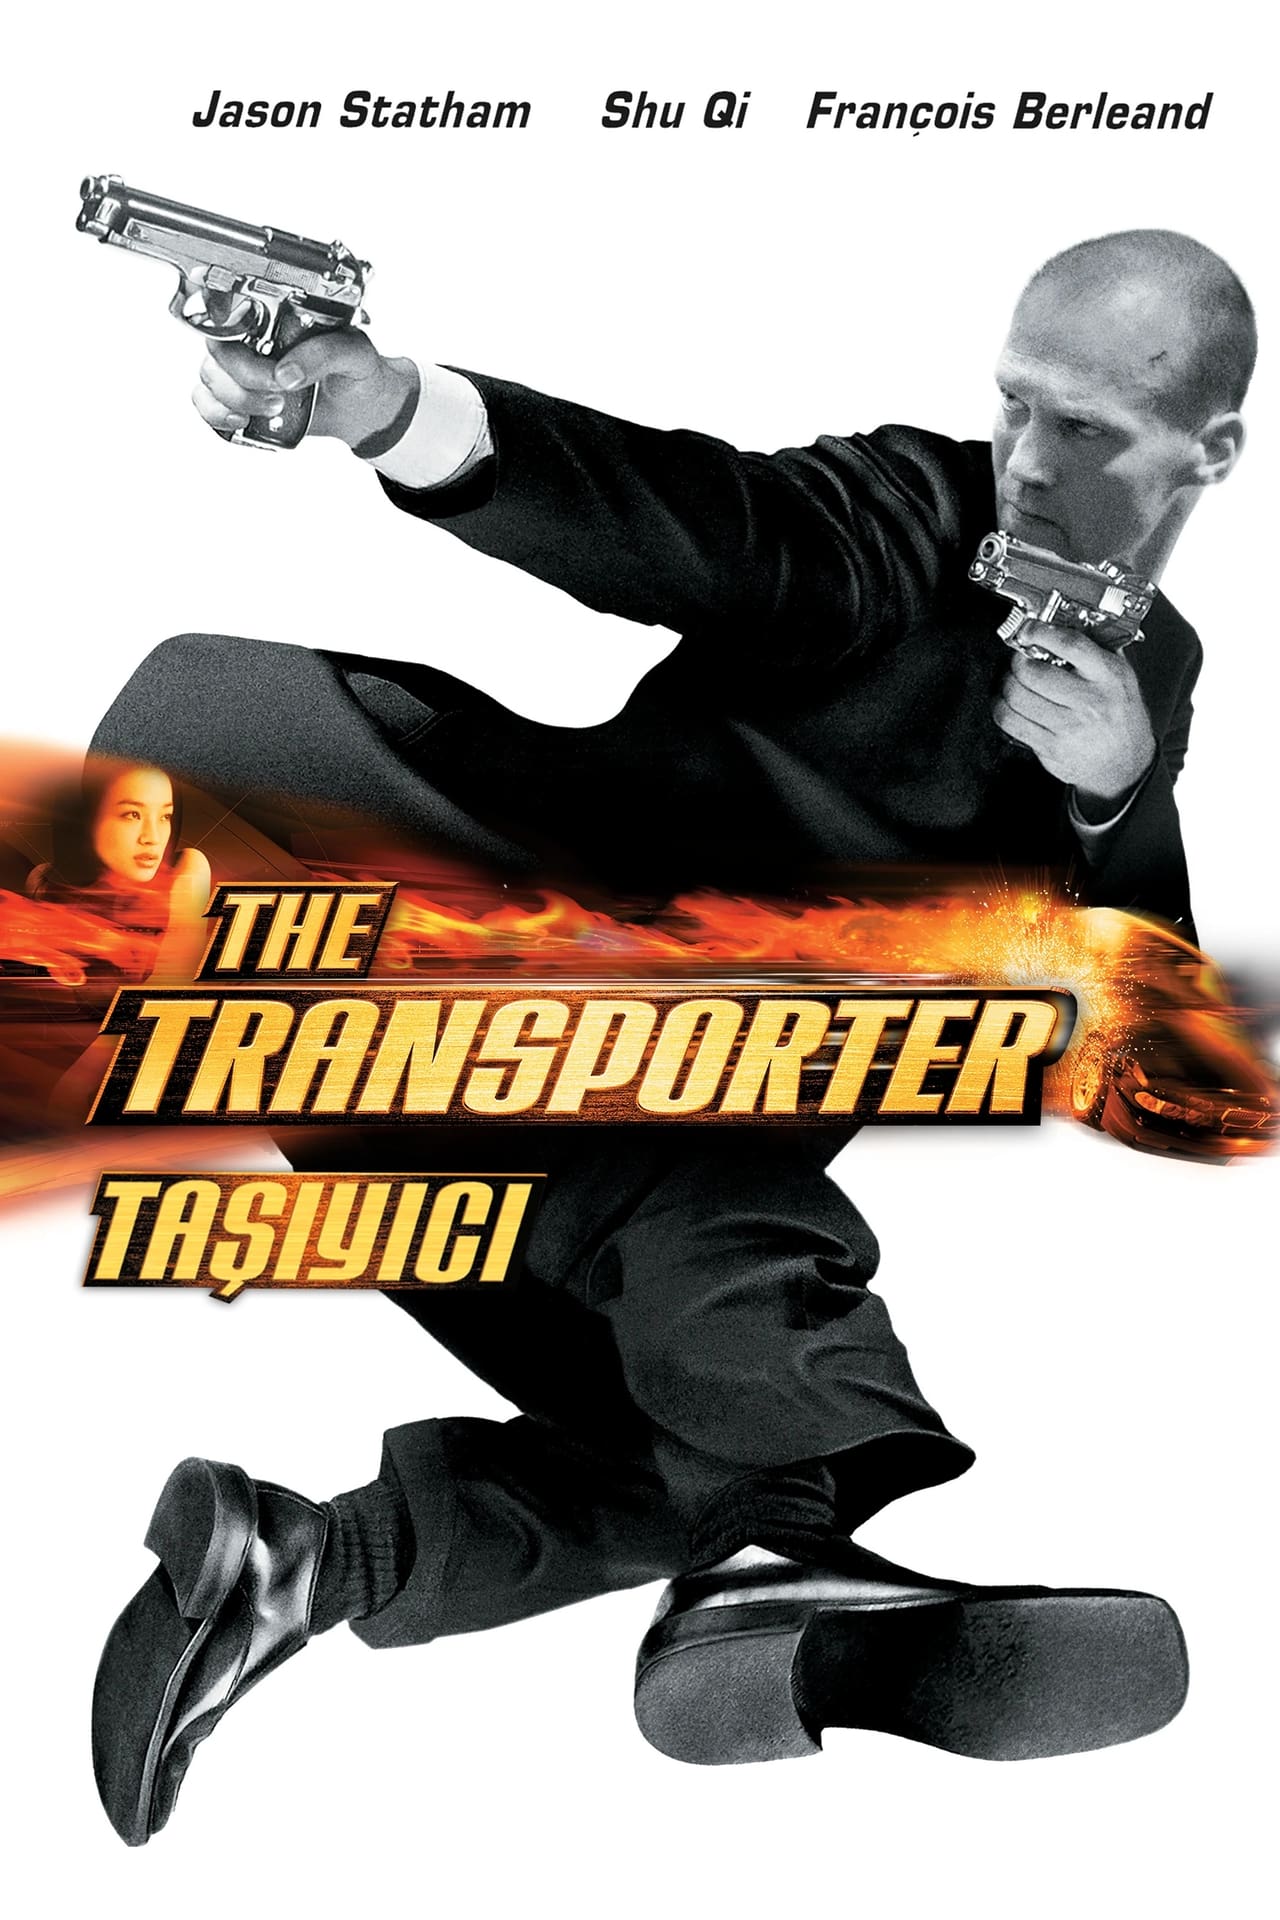 The Transporter (2002) 448Kbps 23.976Fps 48Khz 5.1Ch DVD Turkish Audio TAC